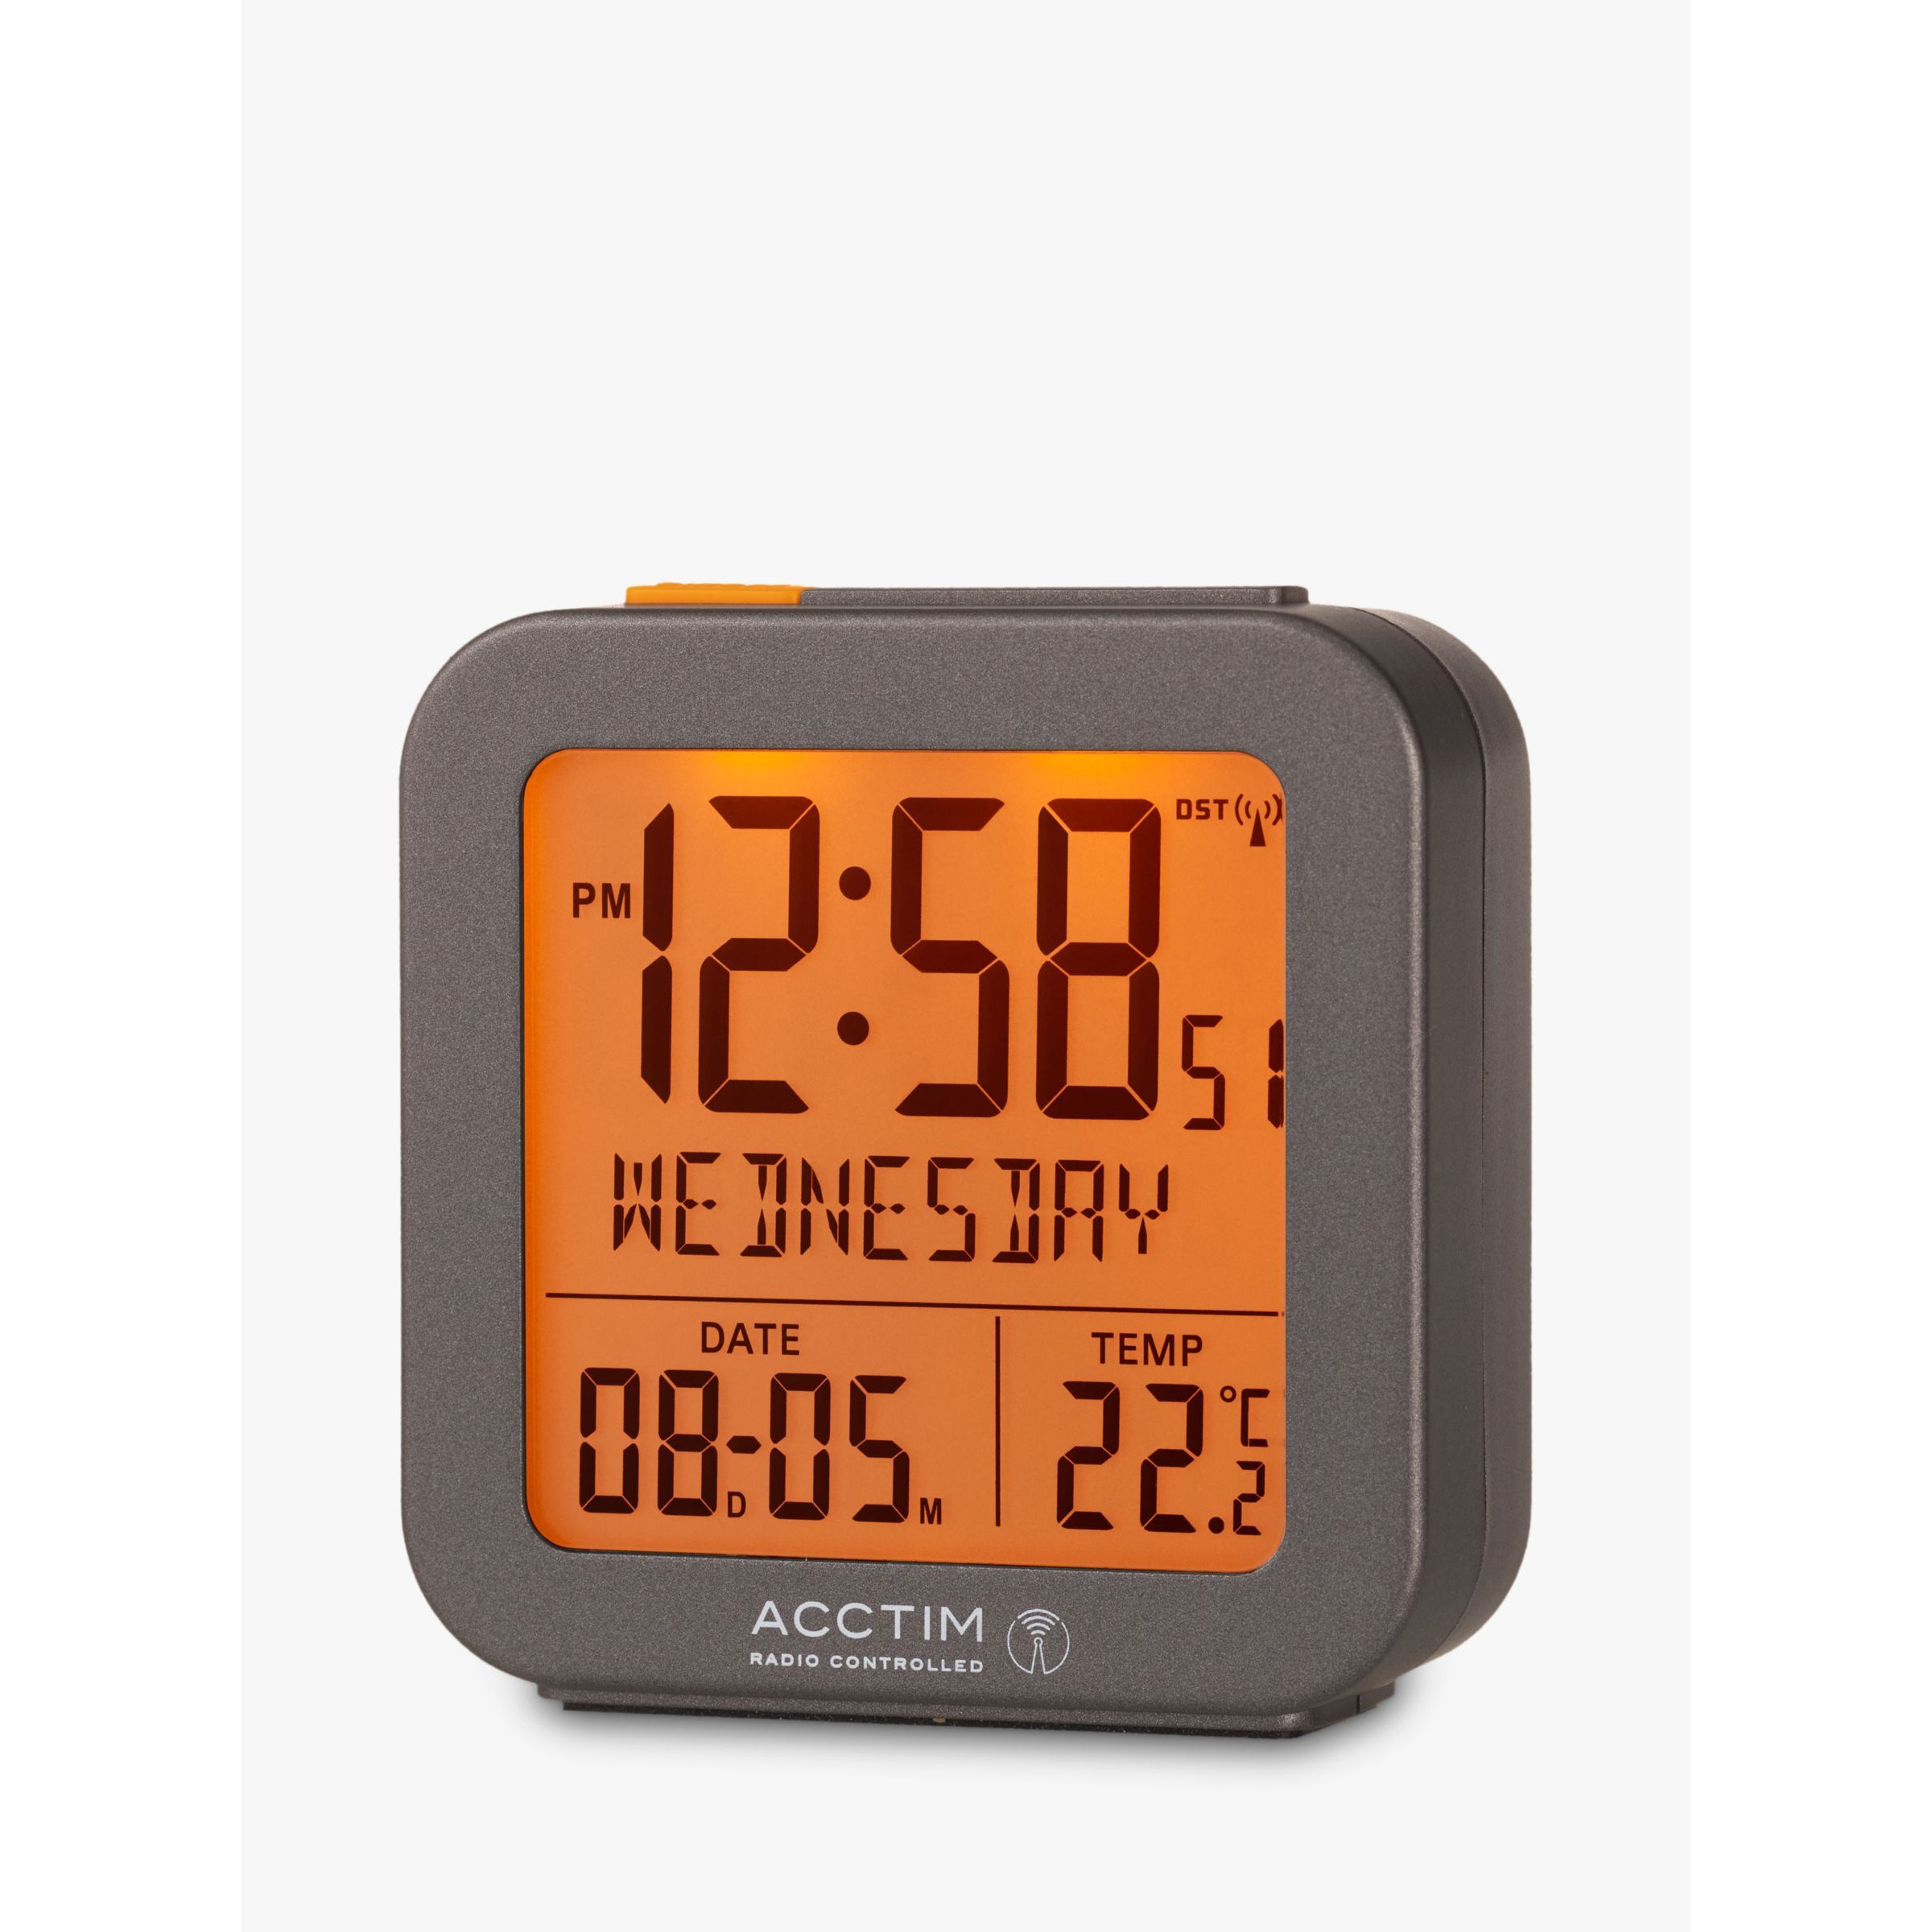 Acctim Invicta Radio Controlled Square Digital Alarm Clock, Dark Grey - image 1